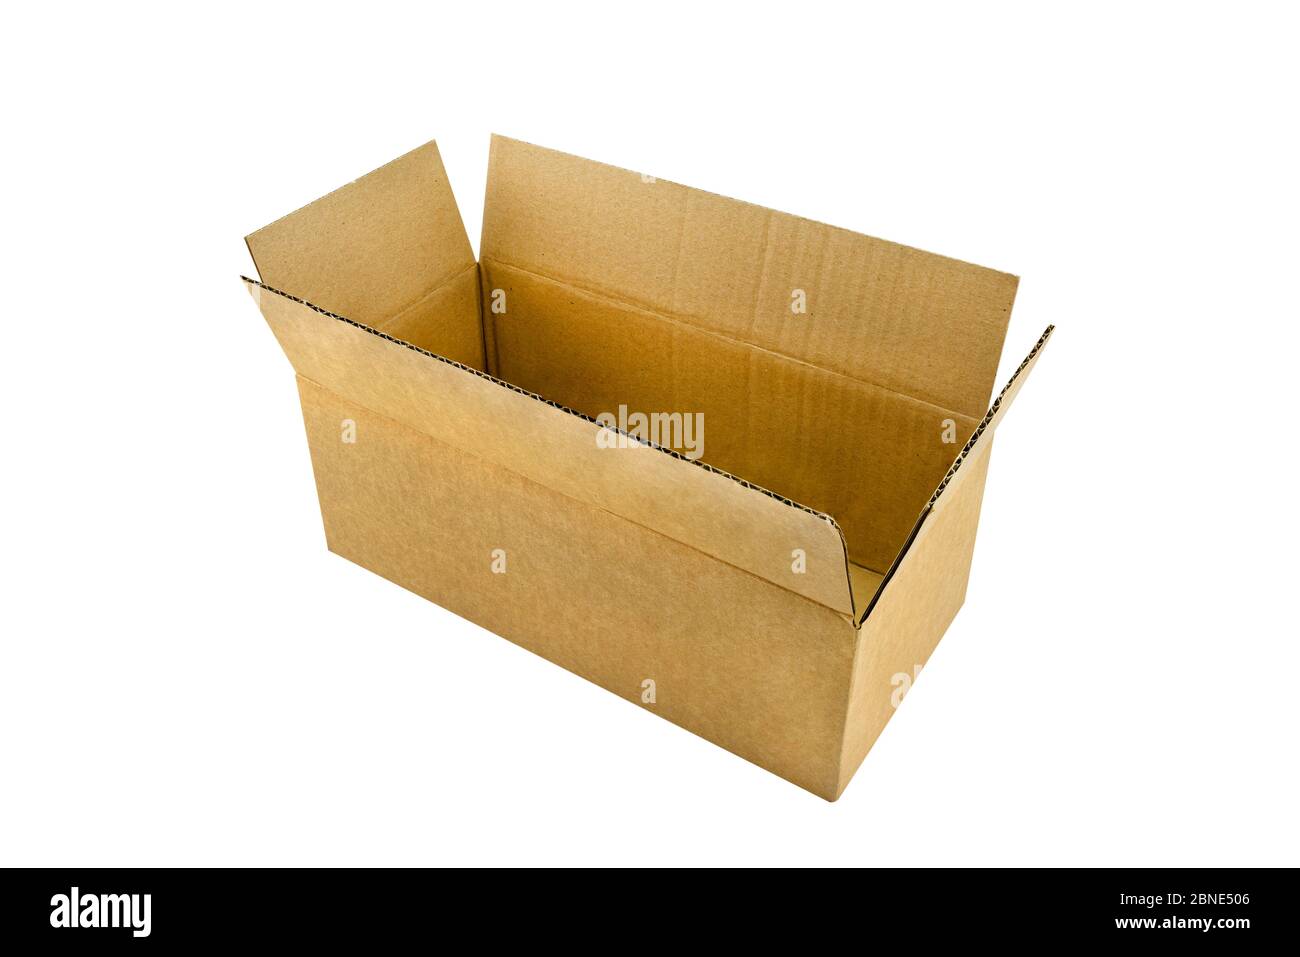 Una scatola di cartone rettangolare, grande e aperta, realizzata